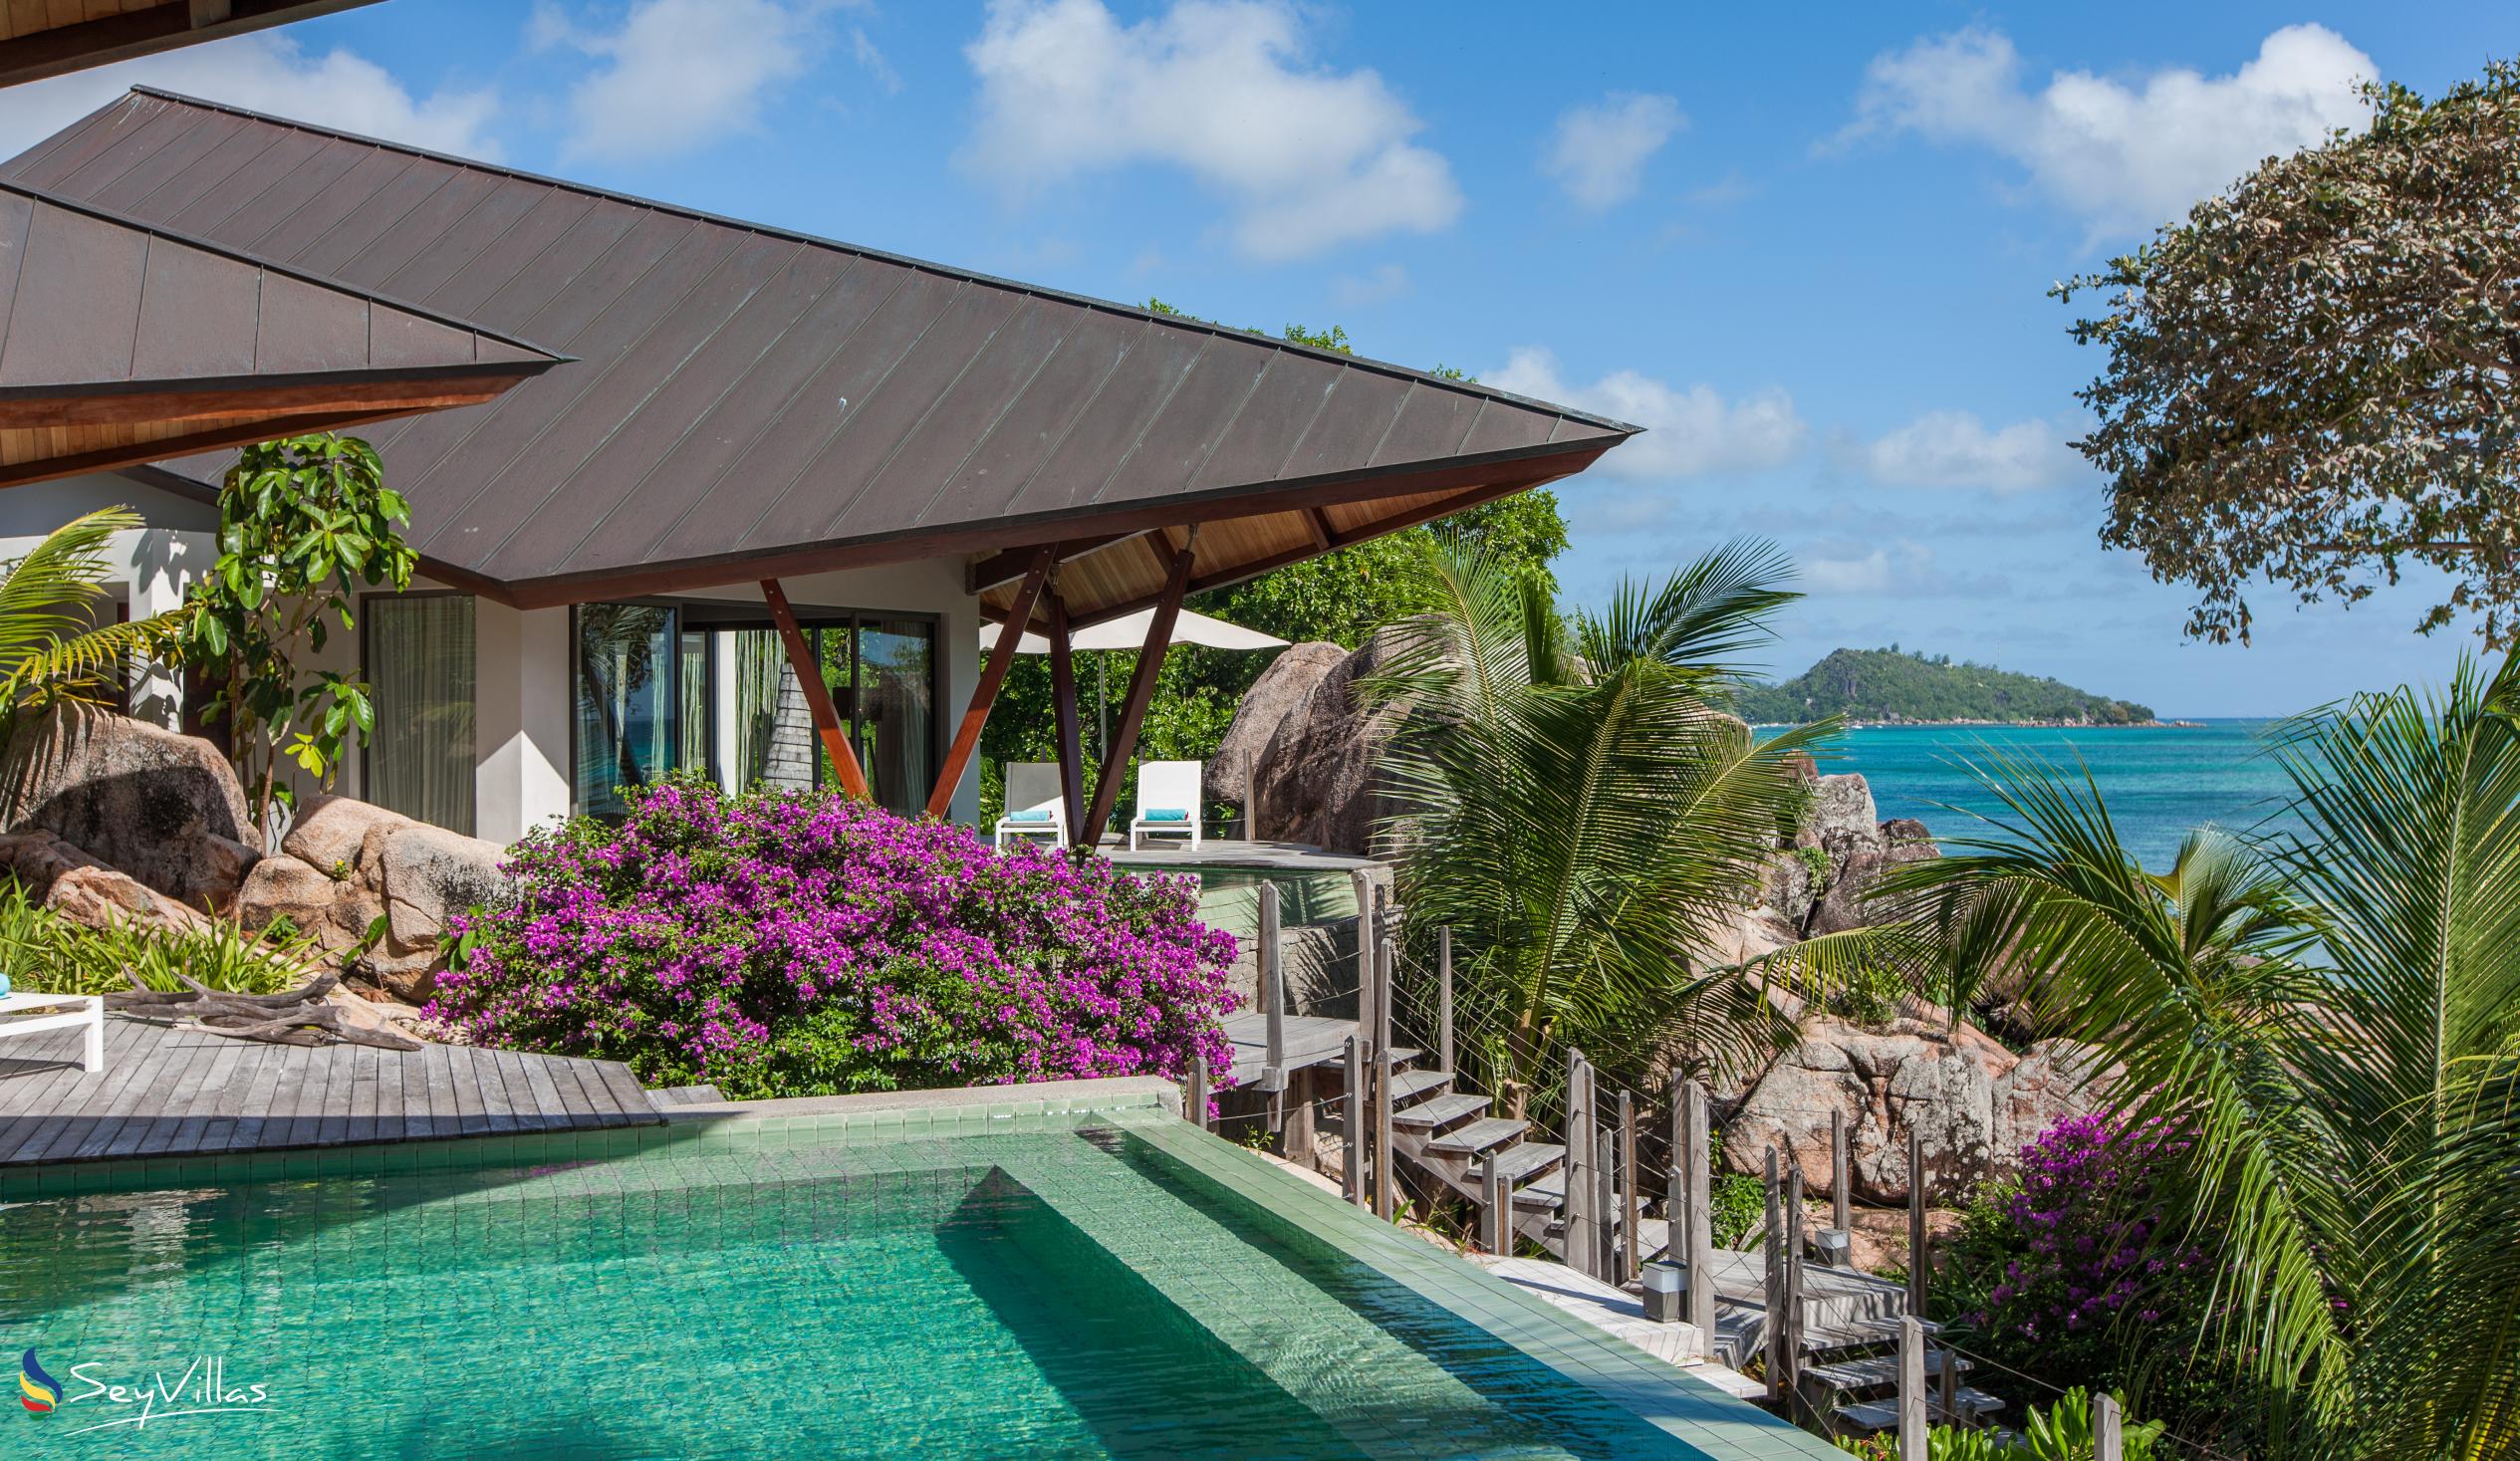 Foto 10: Villa Deckenia - Aussenbereich - Praslin (Seychellen)